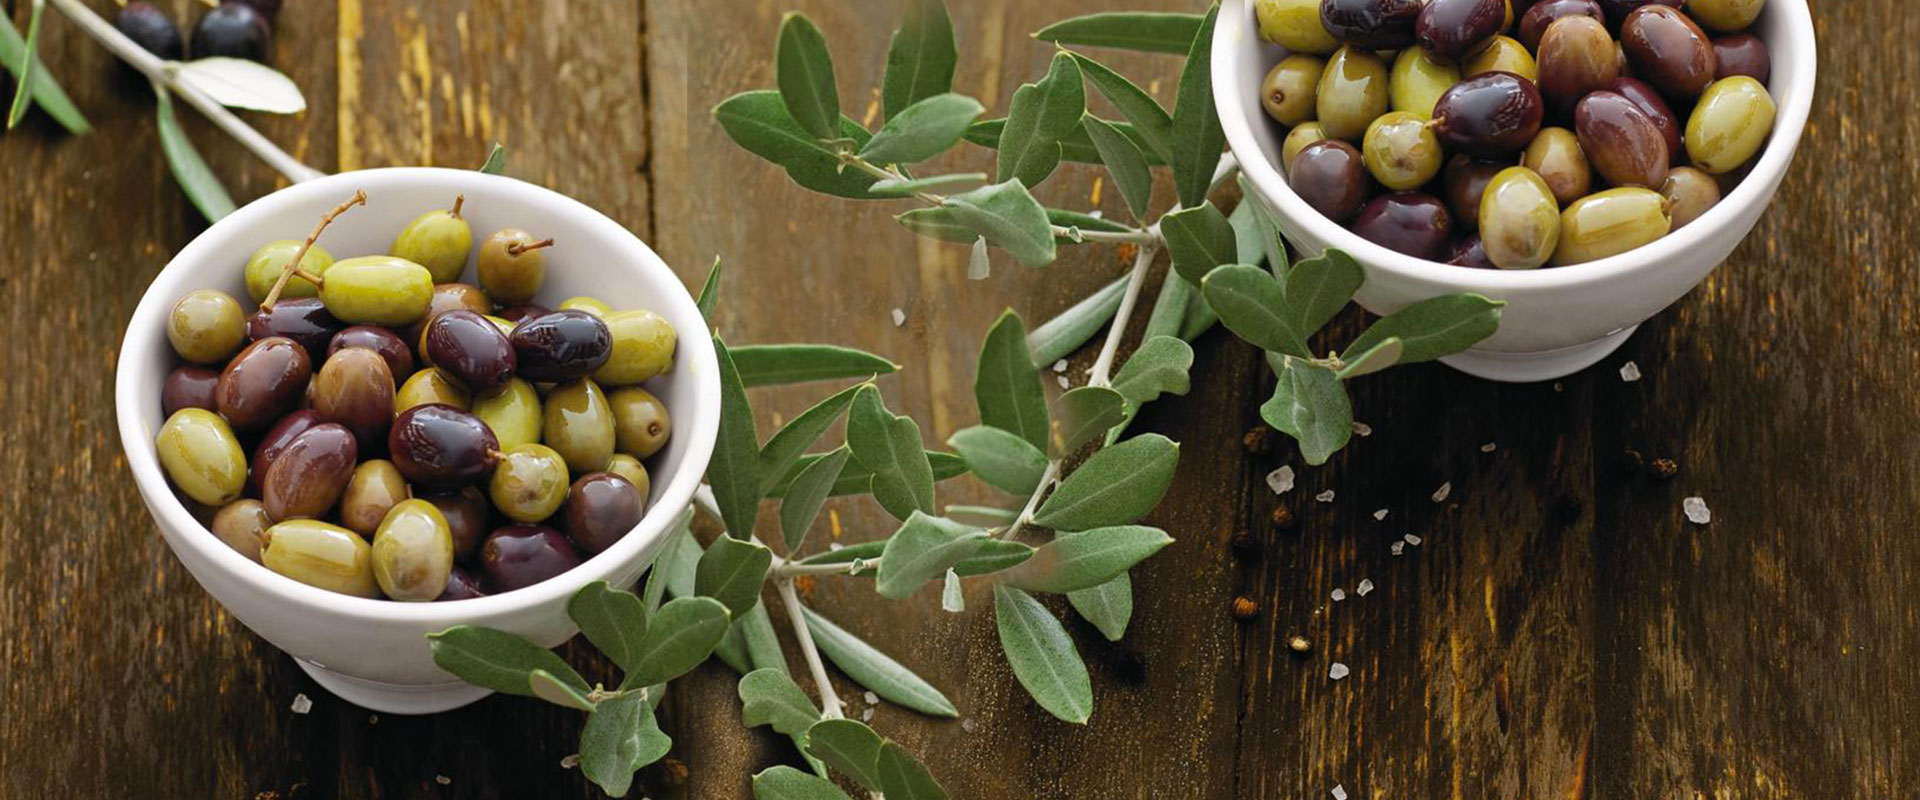 ciotolina con olive taggiasche